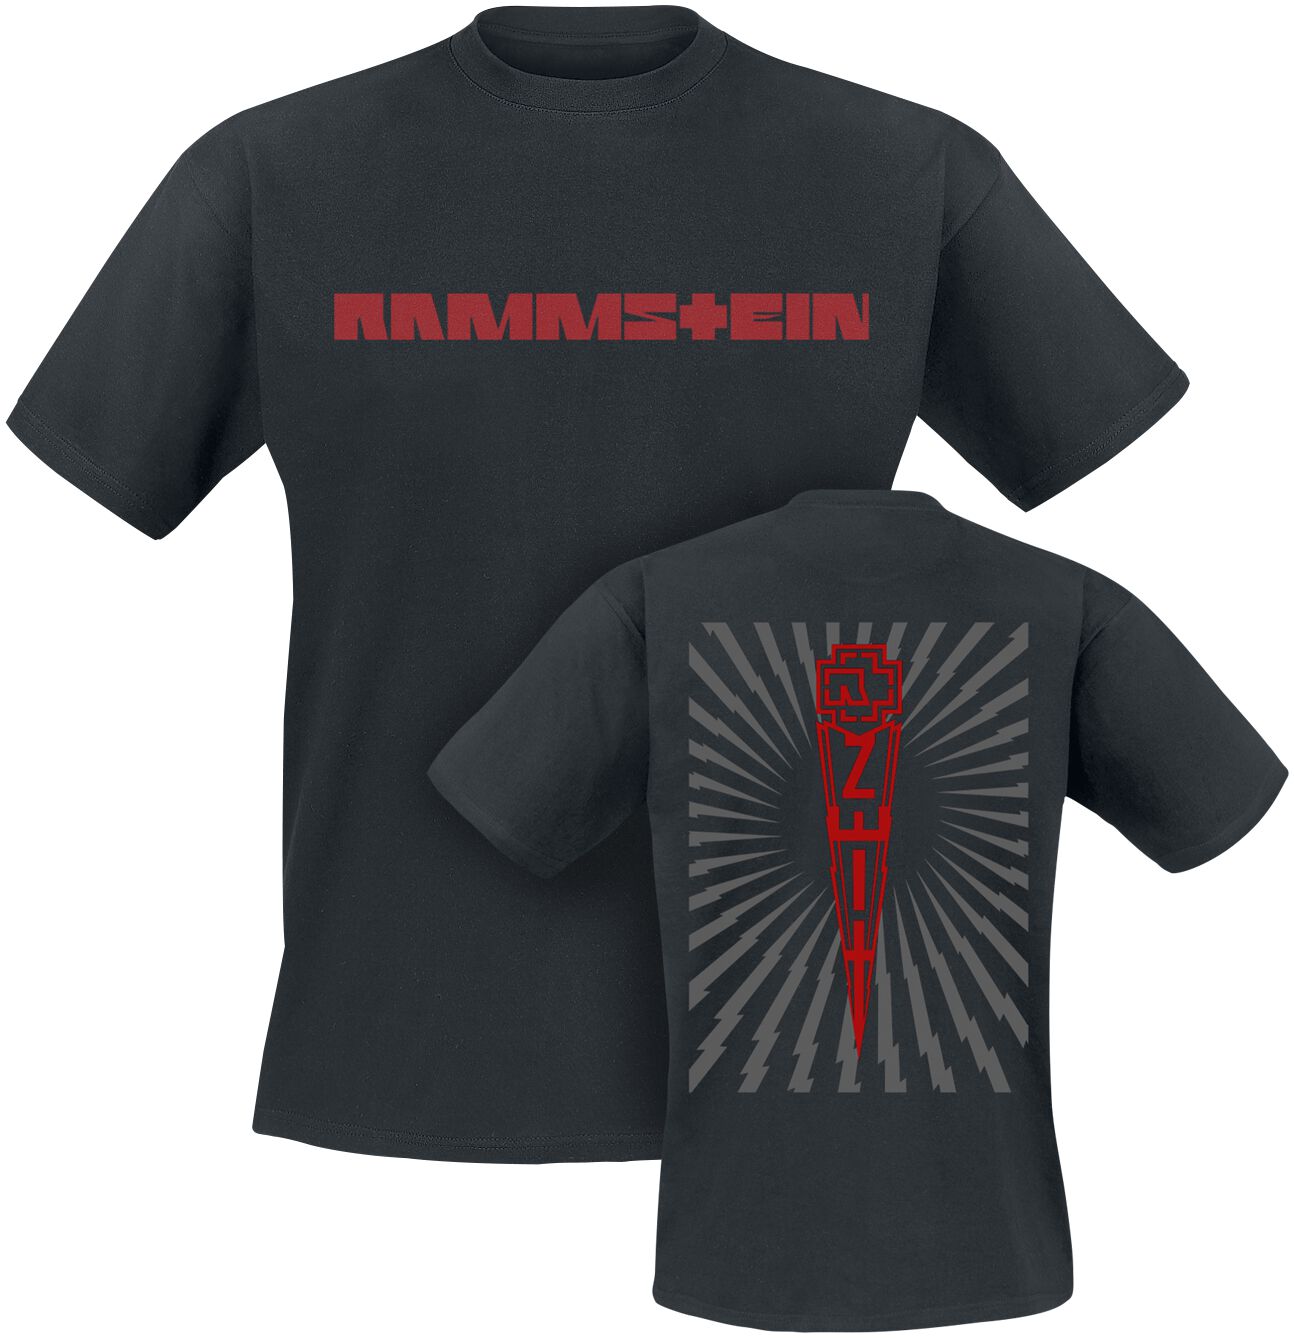 Rammstein T-Shirt - Zeit - S bis 5XL - für Männer - Größe S - schwarz  - Lizenziertes Merchandise!